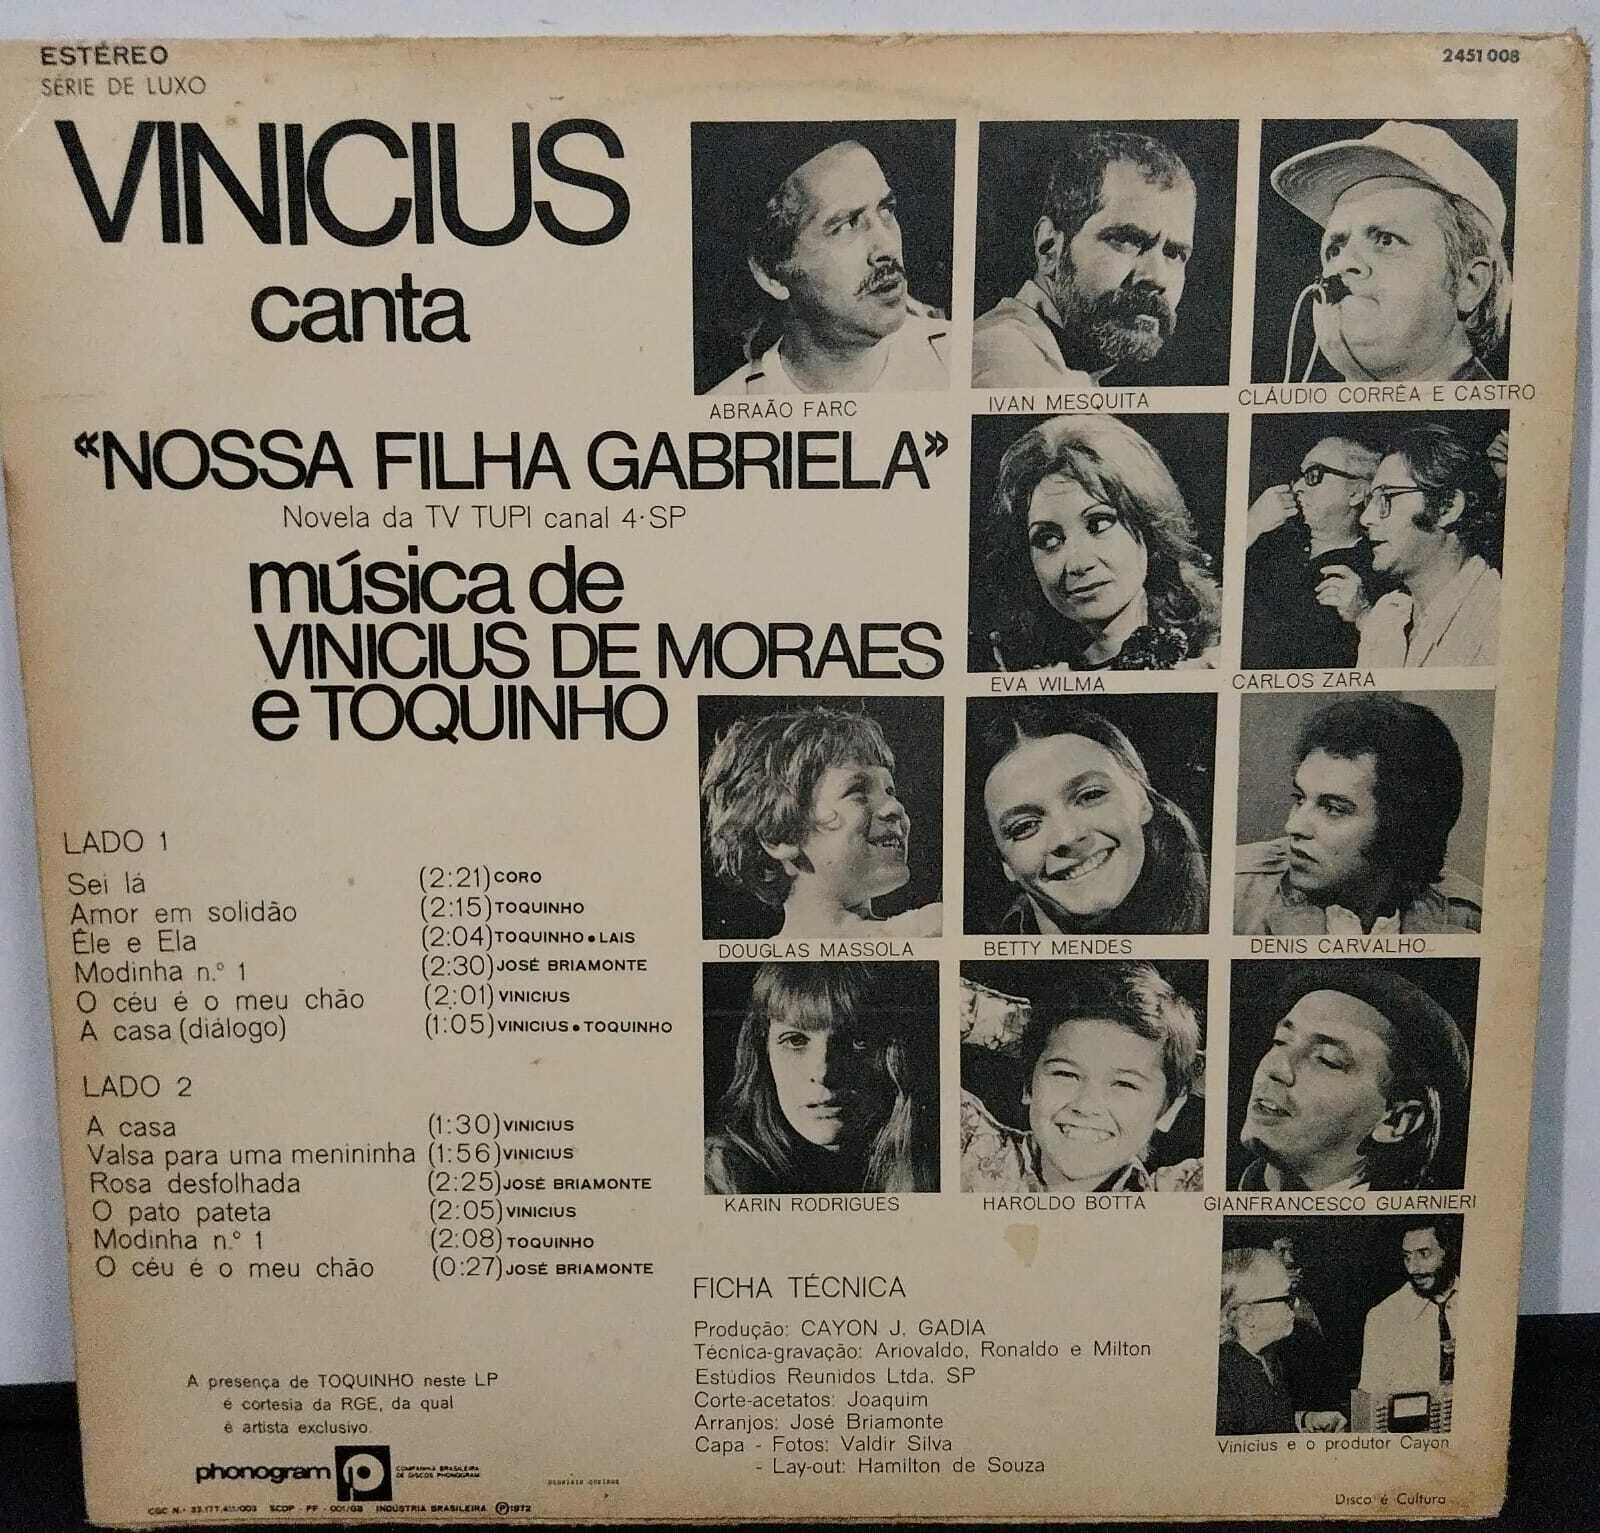 Vinil - Vinicius  de Moraes e Toquinho - Vinicius Canta Nossa Filha Gabriela